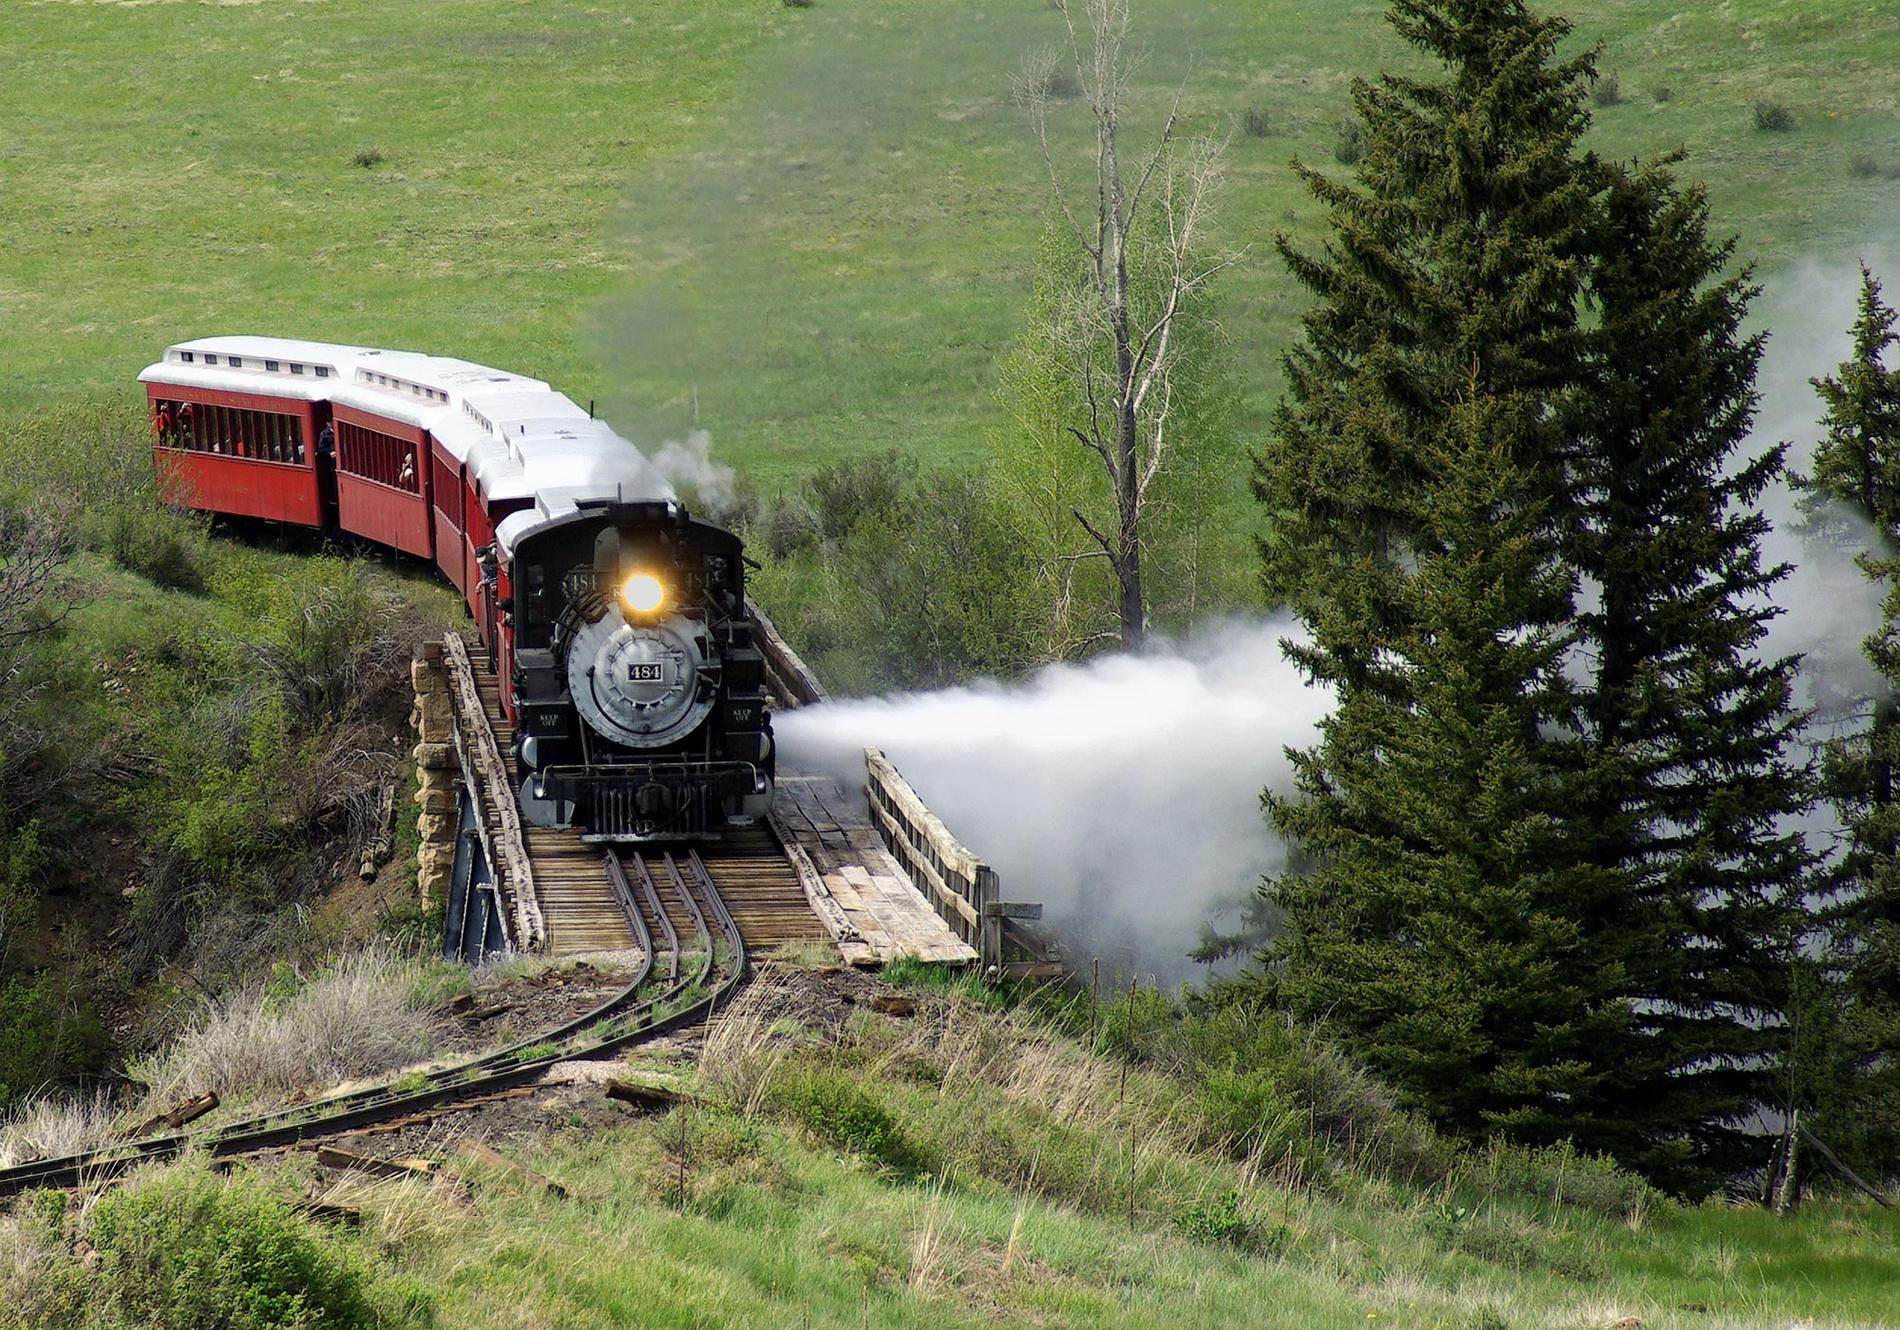 The Cumbres and Toltec Scenic Railroad, USA I södra delen av Klippiga bergen förbinder det här vackra gamla tåget Chama i New Mexico med Antonito i Colorado. Cumbres Pass längs vägen är USA:s högsta tågpunkt, 3050 meter över havet.
 Kolla in billigaste flygen till USA här.